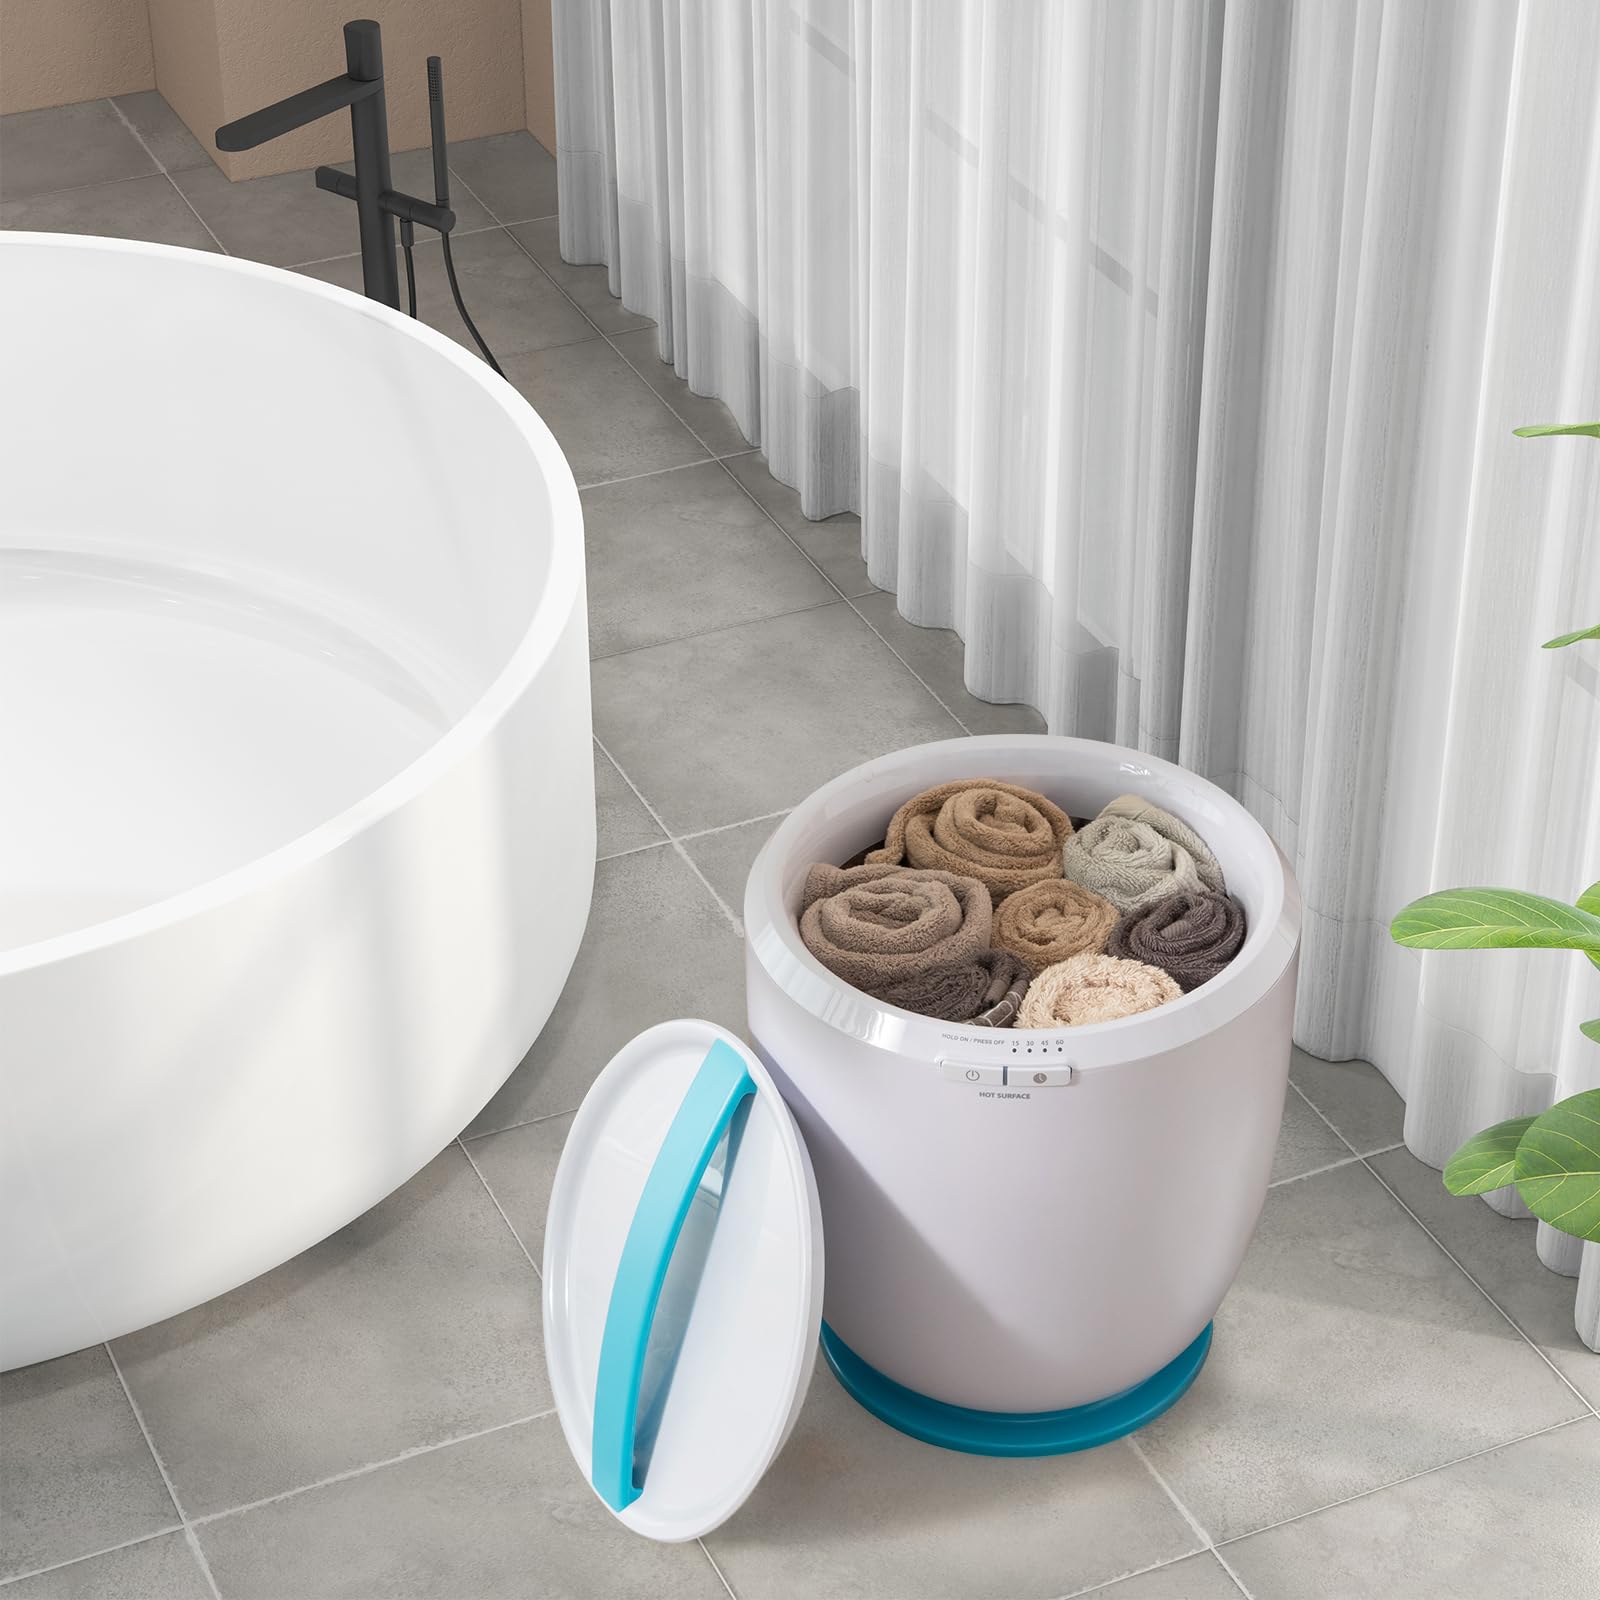 Giantex Towel Warmer Bucket - Hot Towel Warmer for Bathroom Spa